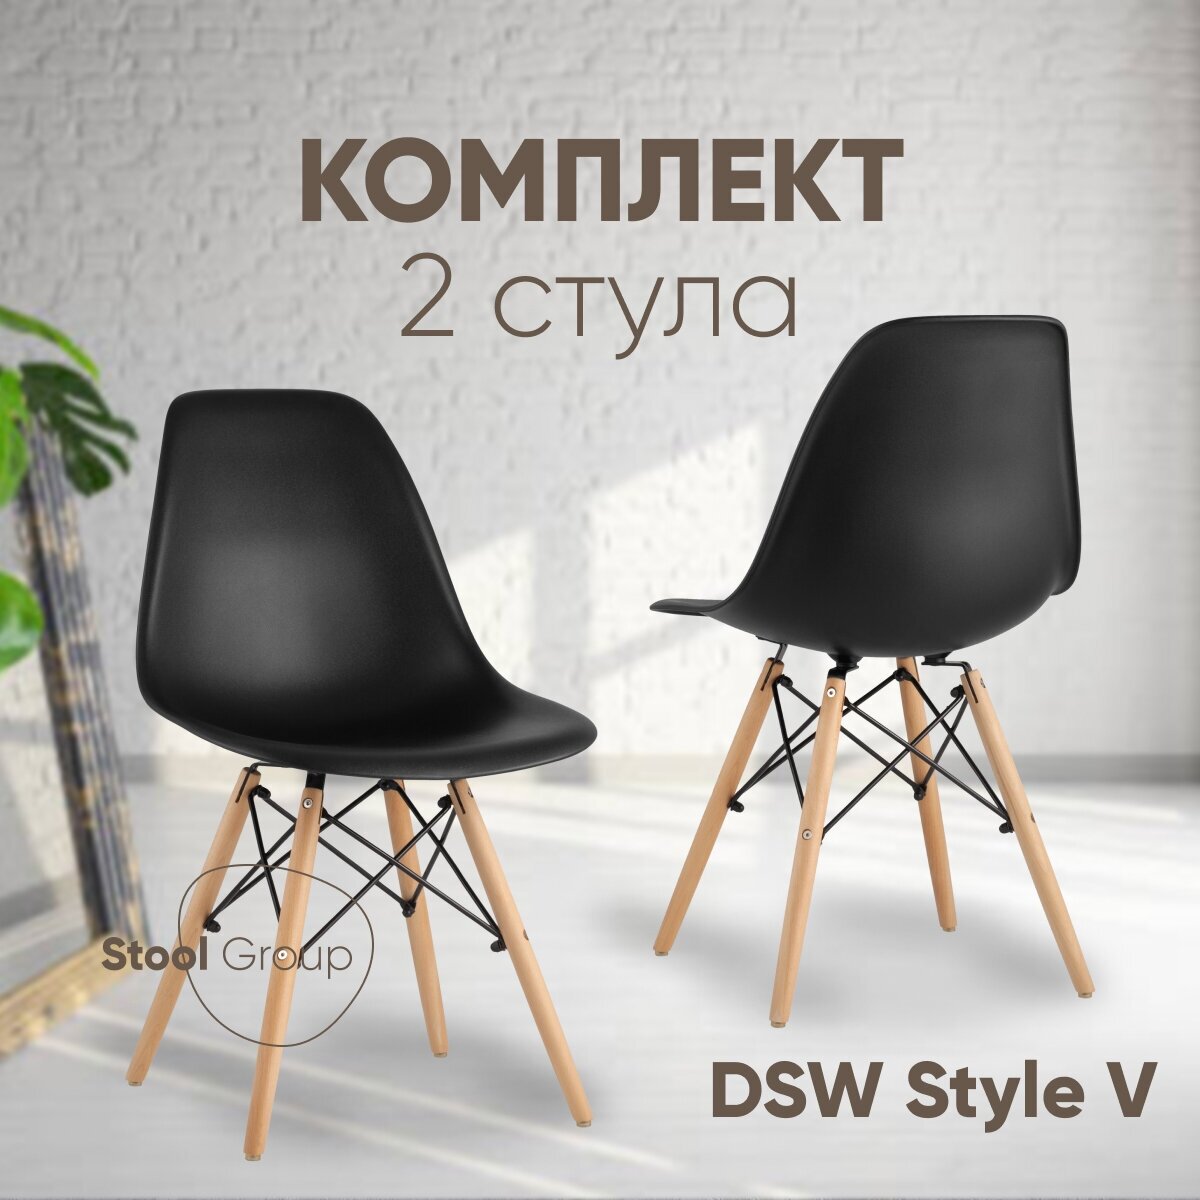 Стул для кухни DSW Style V черный (комплект 2 стула)